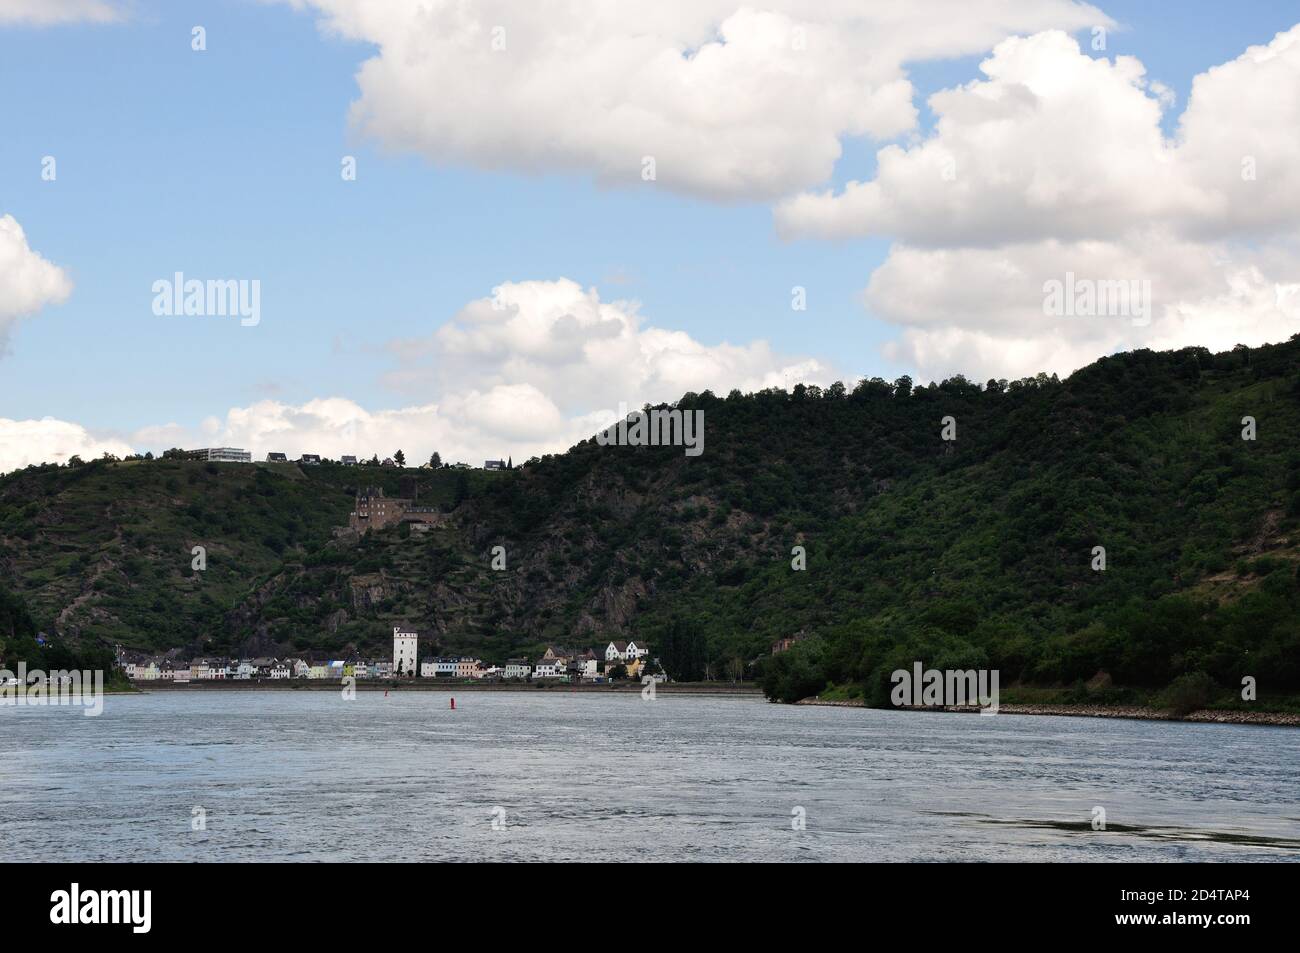 Die wunderschönen romantischen felsigen Ufer des Mittelrhein BEI Sankt Goar laden ein zum Entspannen und Wandern. Alte Sagen werden wieder lebendig. - Banque D'Images